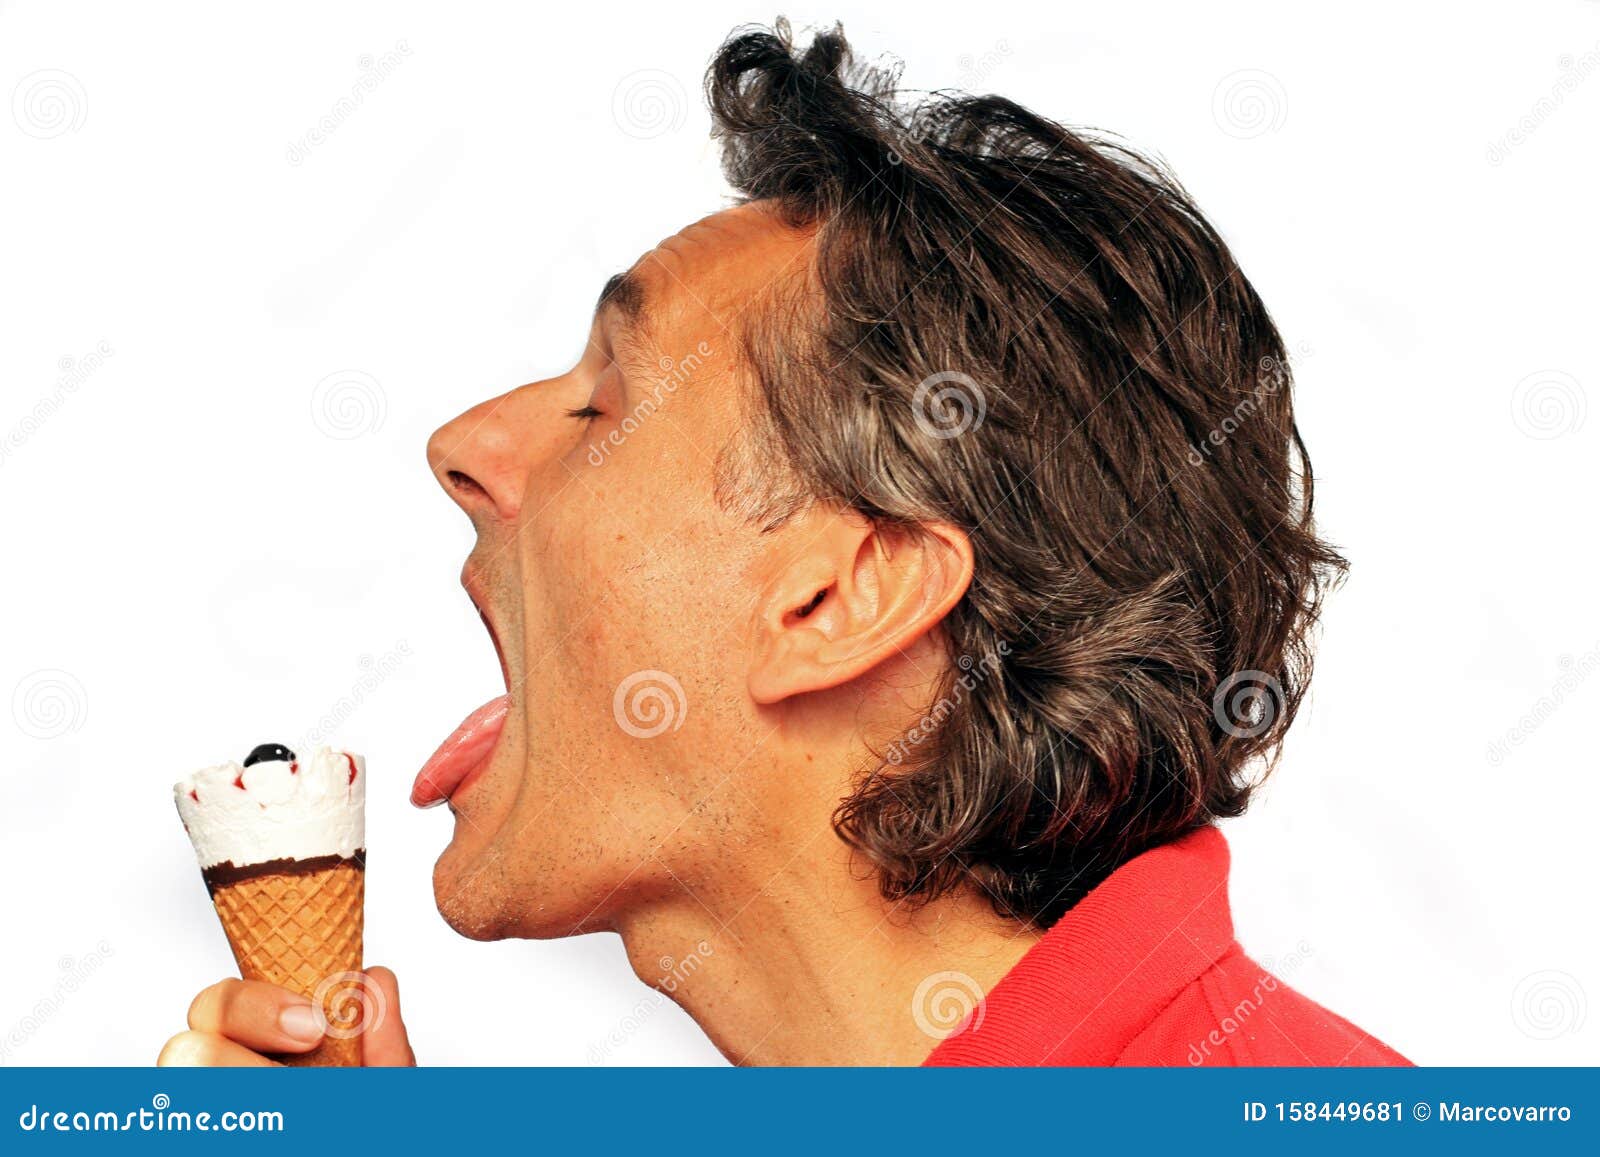 吃冰淇淋图片大全-吃冰淇淋高清图片下载-觅知网